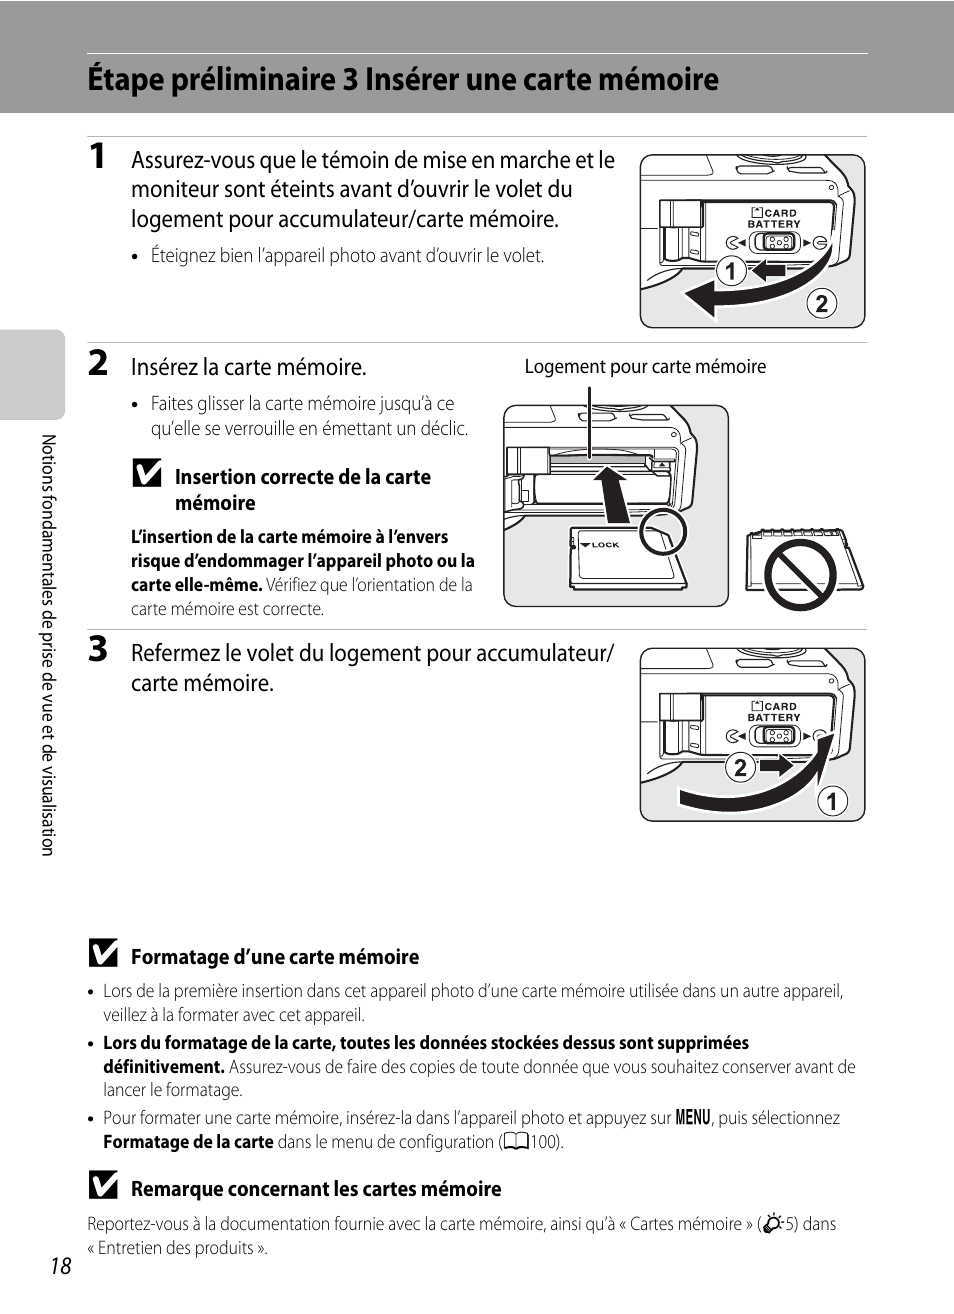 Étape préliminaire 3 insérer une carte mémoire | Nikon Coolpix S9300 Manuel d'utilisation | Page 36 / 244